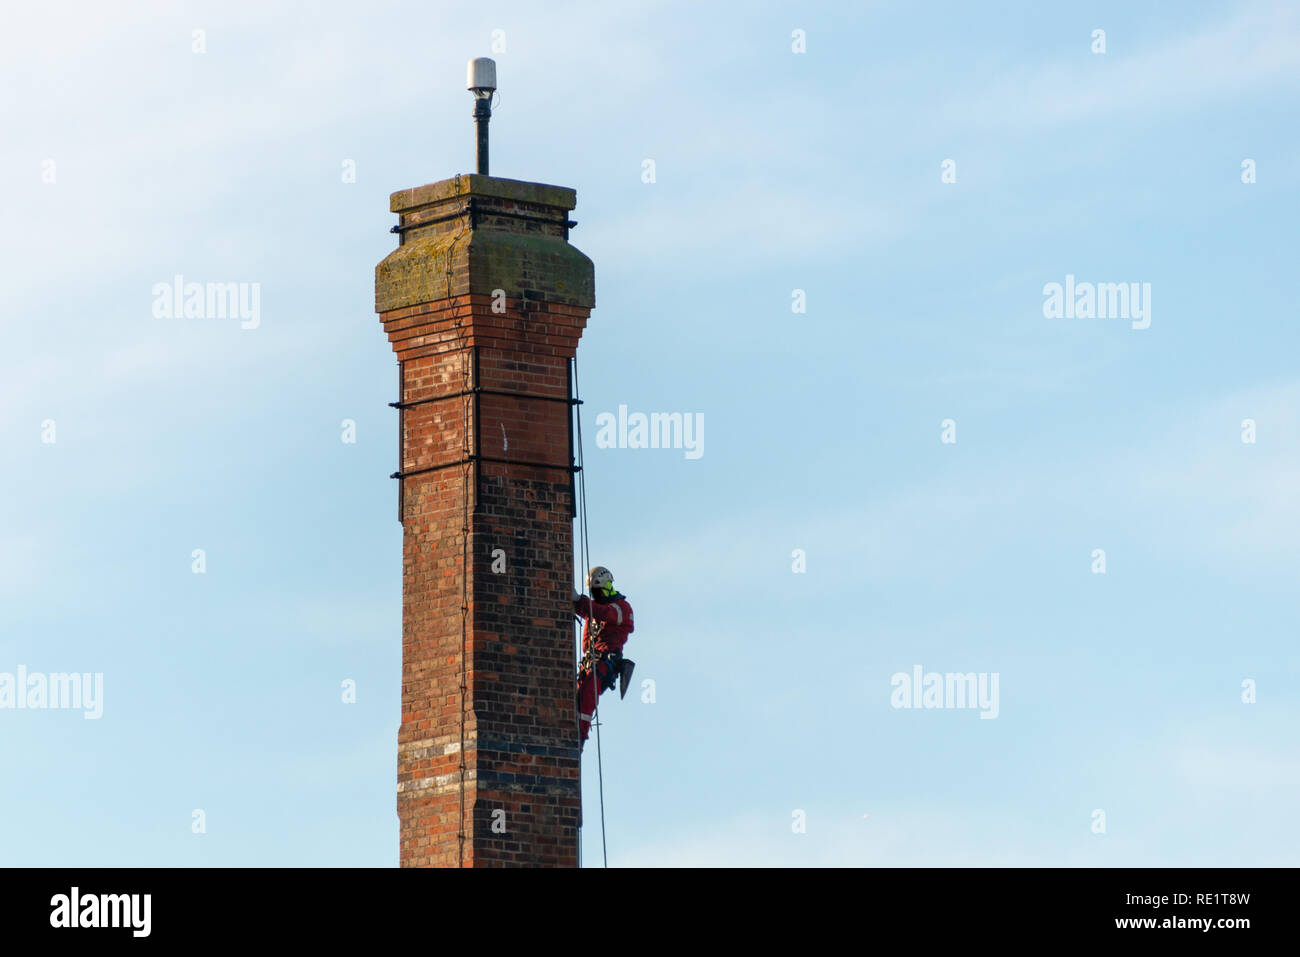 L'homme faisant un travail dangereux steeplejack descendre la haute tour de briques à l'aide de cordes Banque D'Images